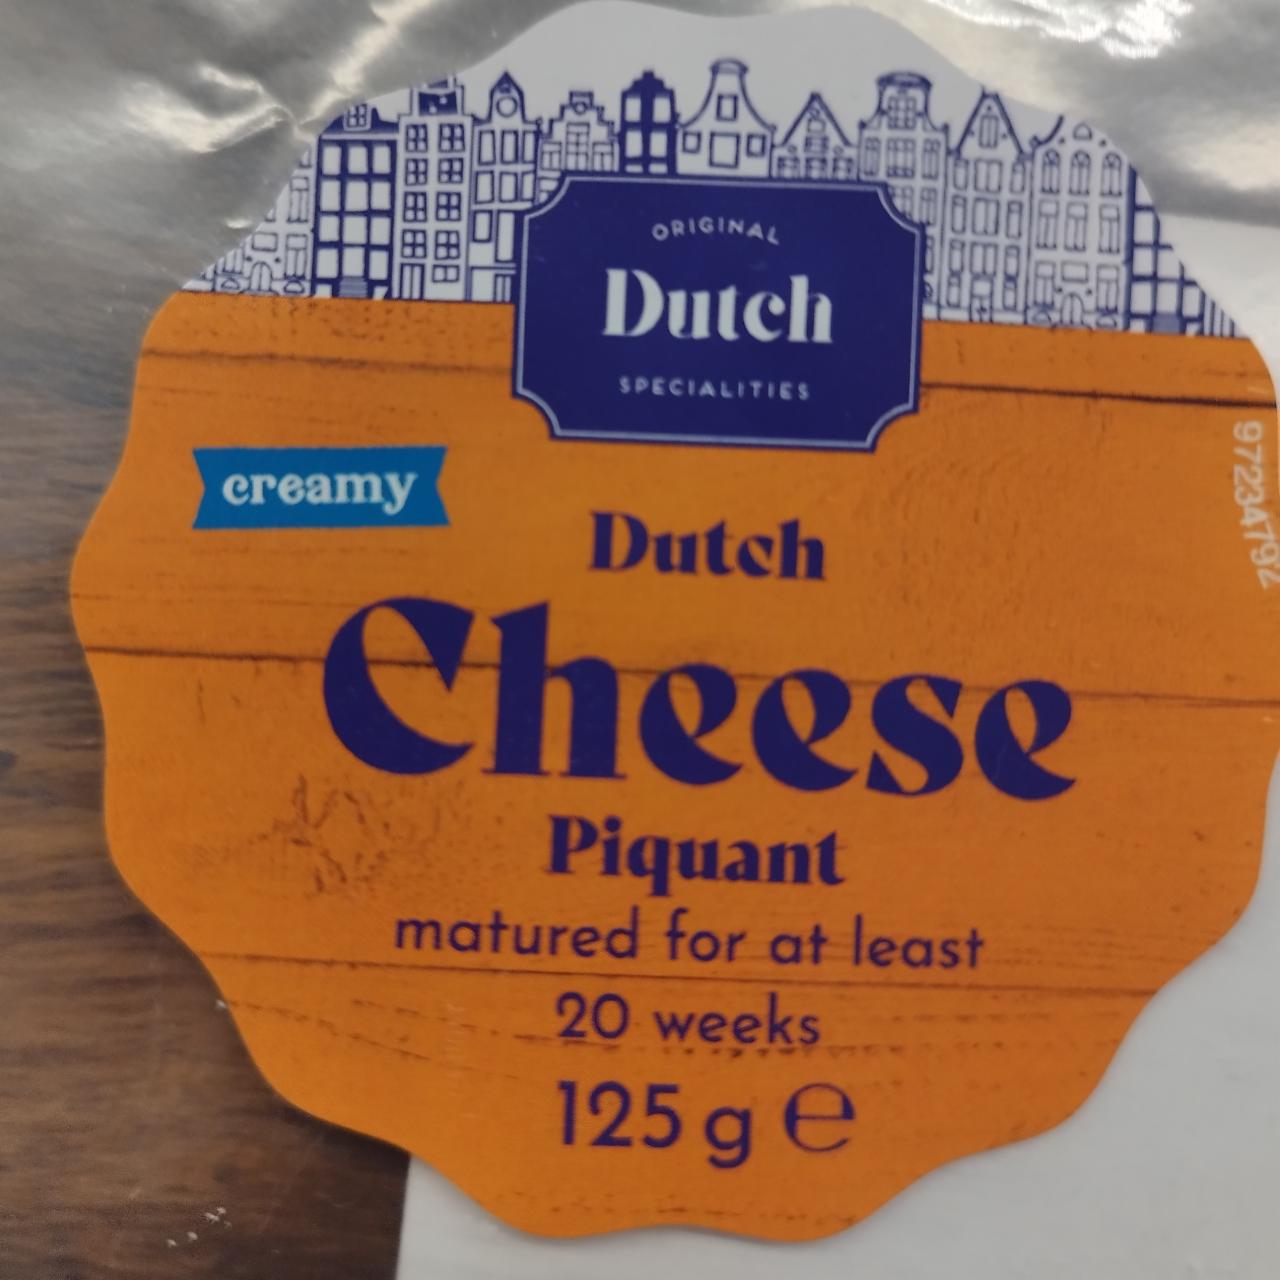 Fotografie - Dutch Cheese Piquant creamy Original Dutch Specialities